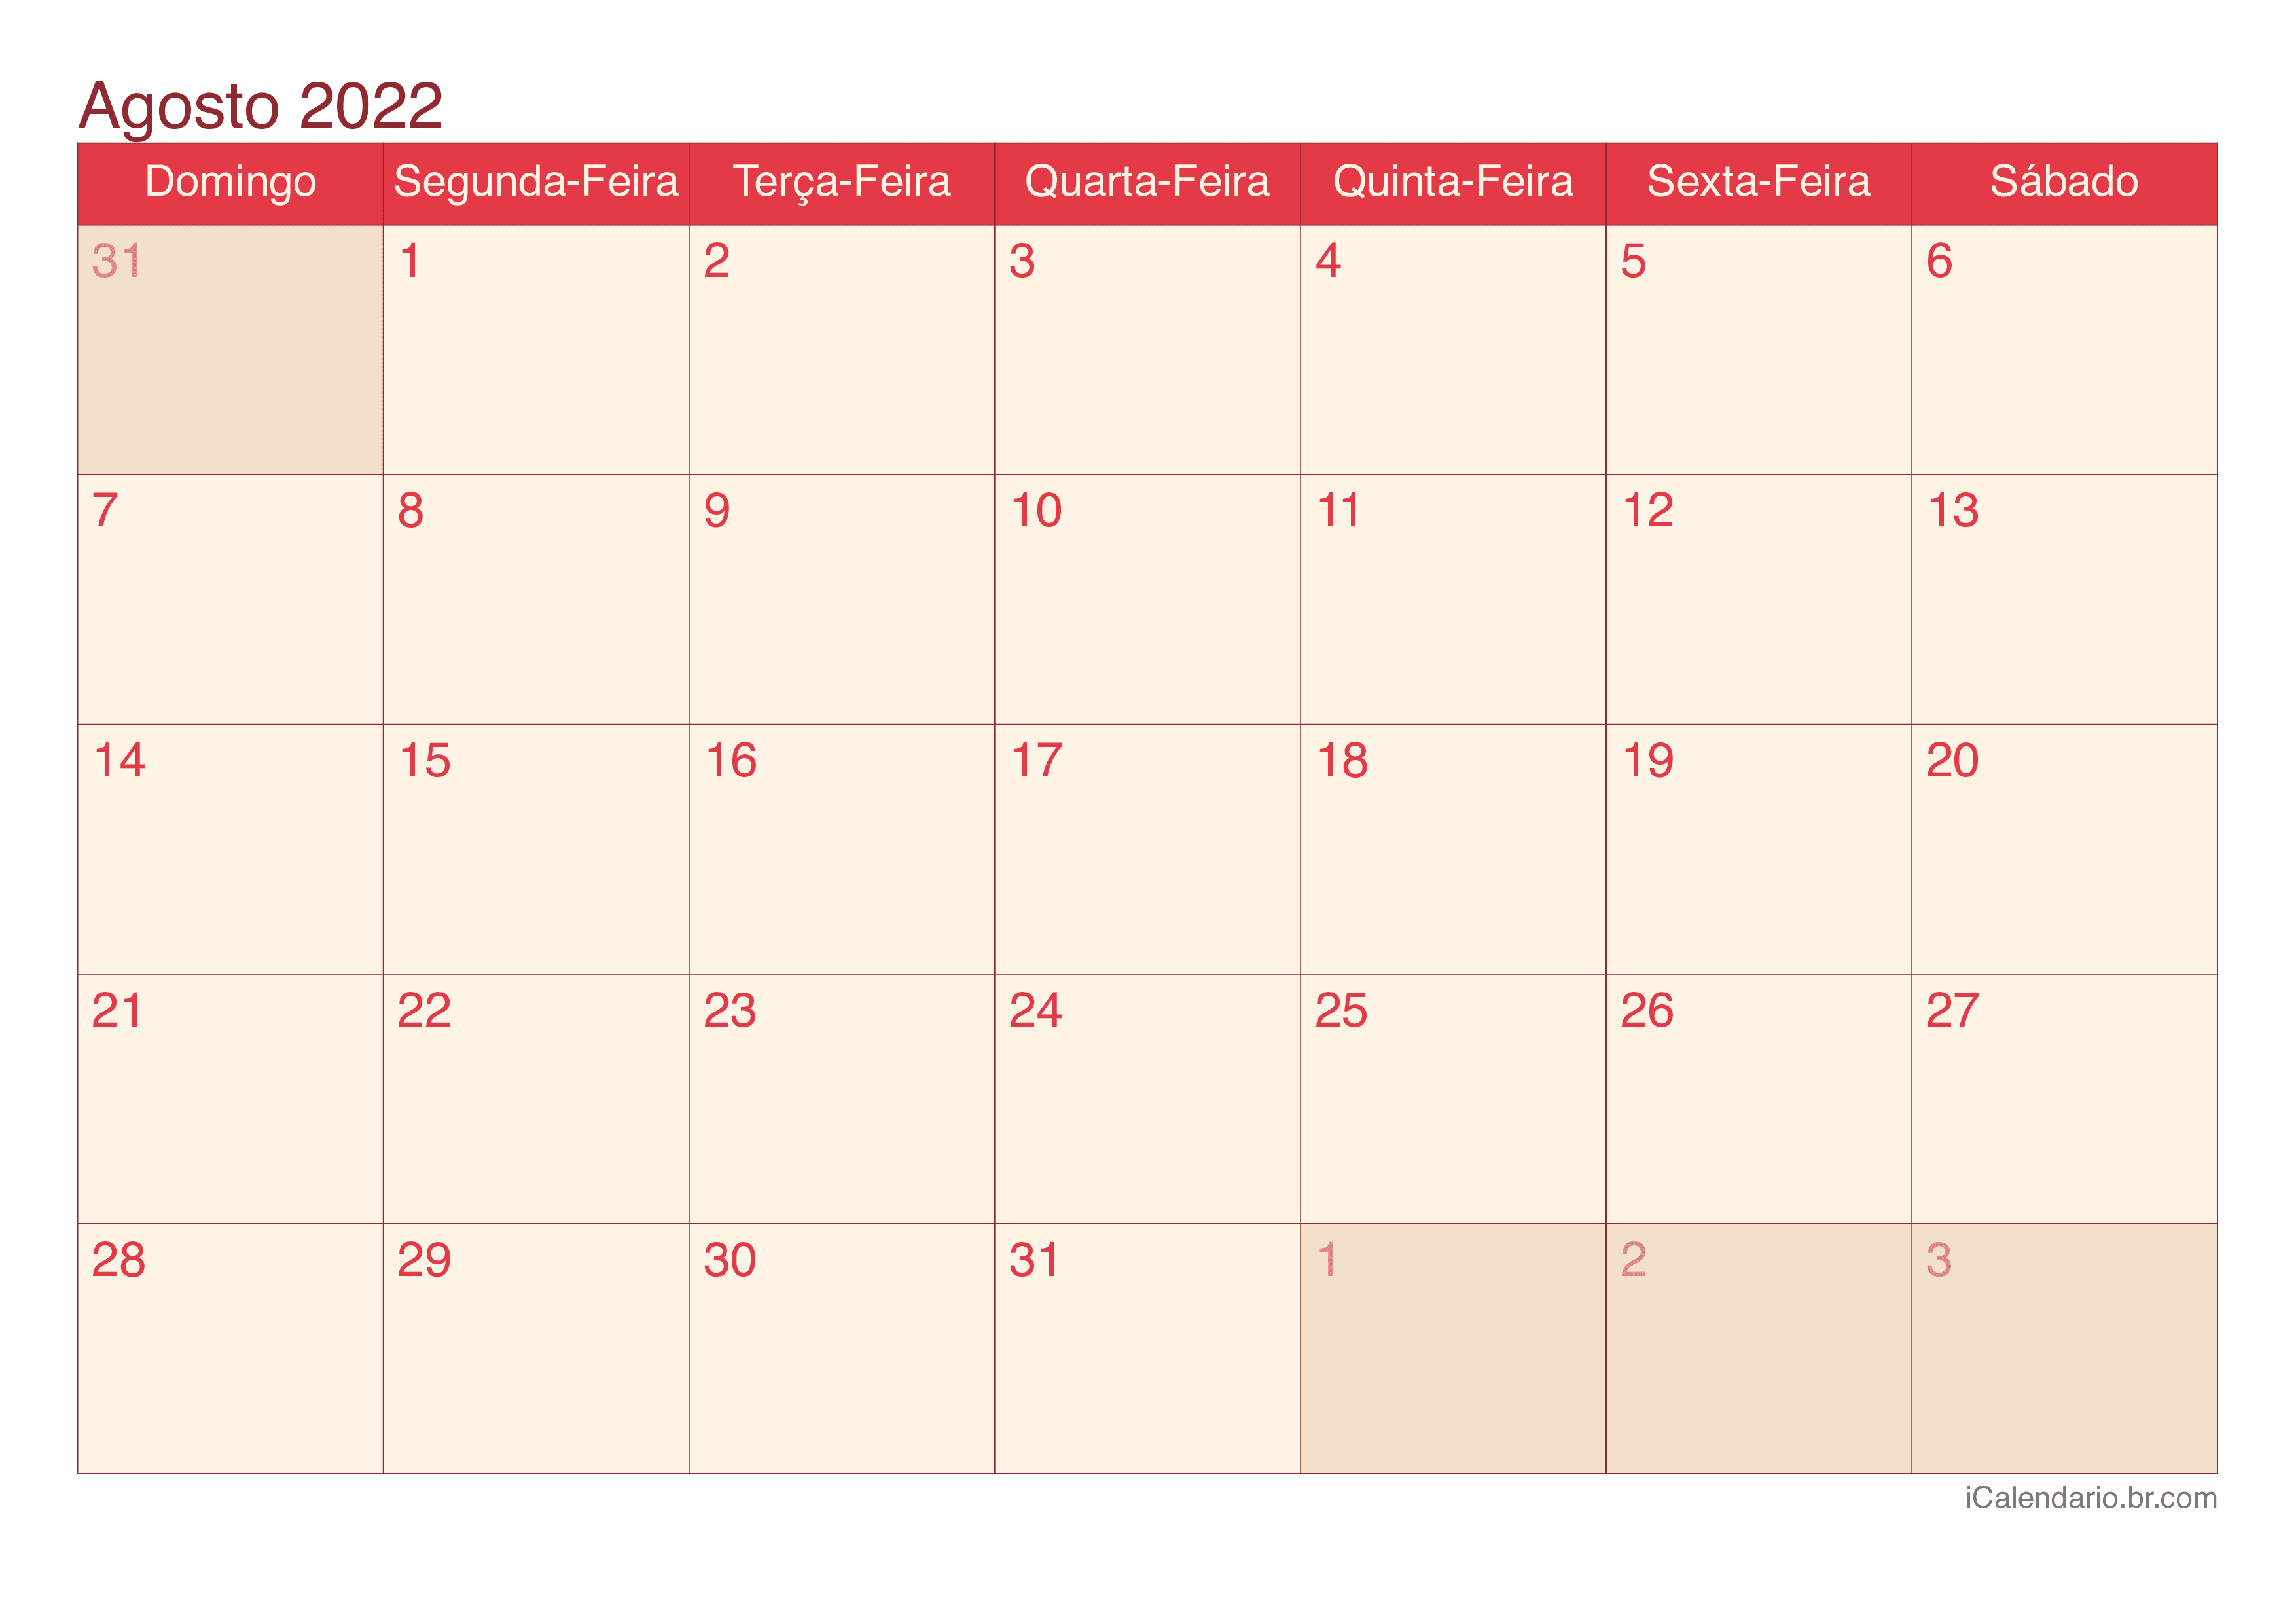 Calendário de agosto 2022 - Cherry